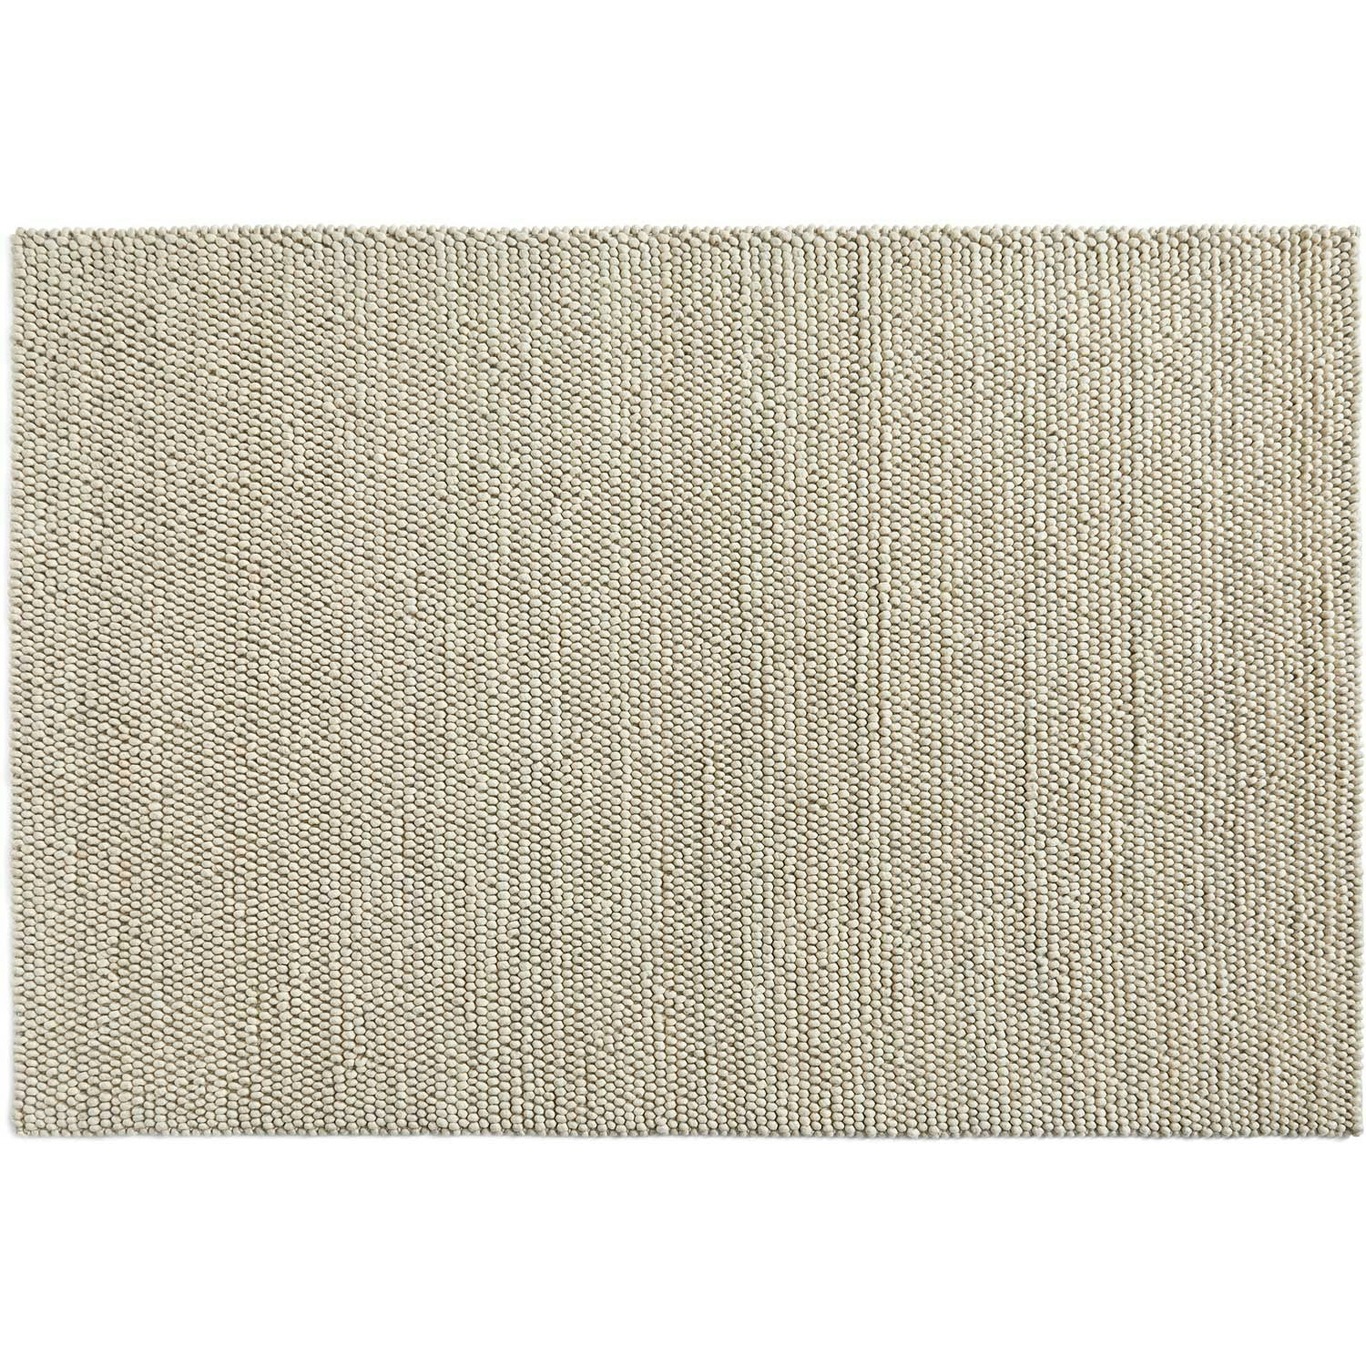 Peas Teppich, 200x300 cm / Soft Grey